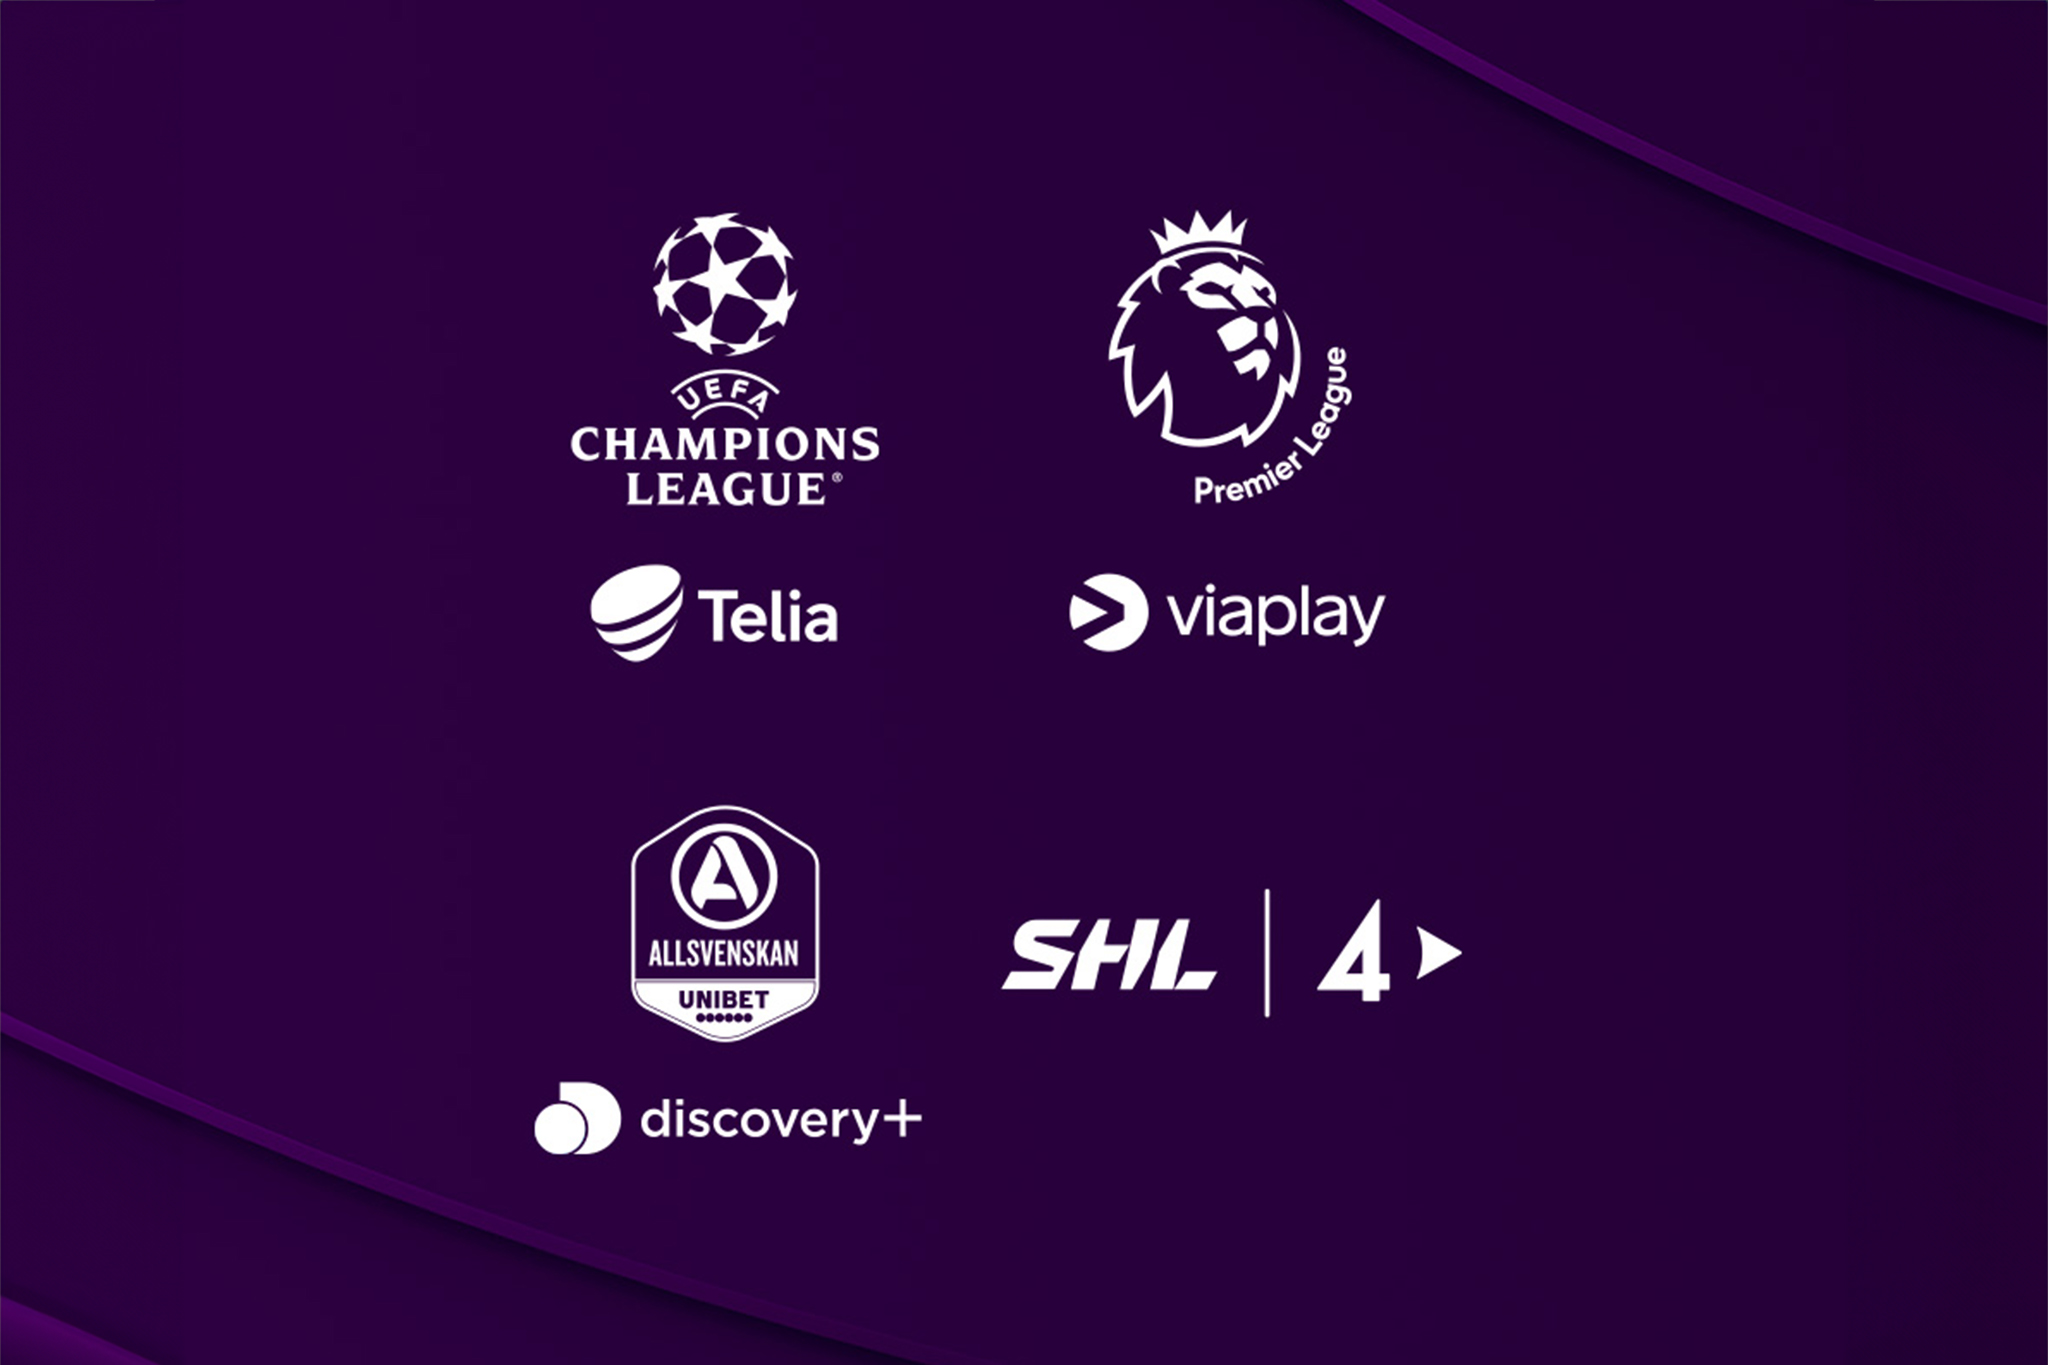 Samla alla ligor och matcher från Viaplay, TV4 Play och Allsvenskan (discovery+) på ett ställe.